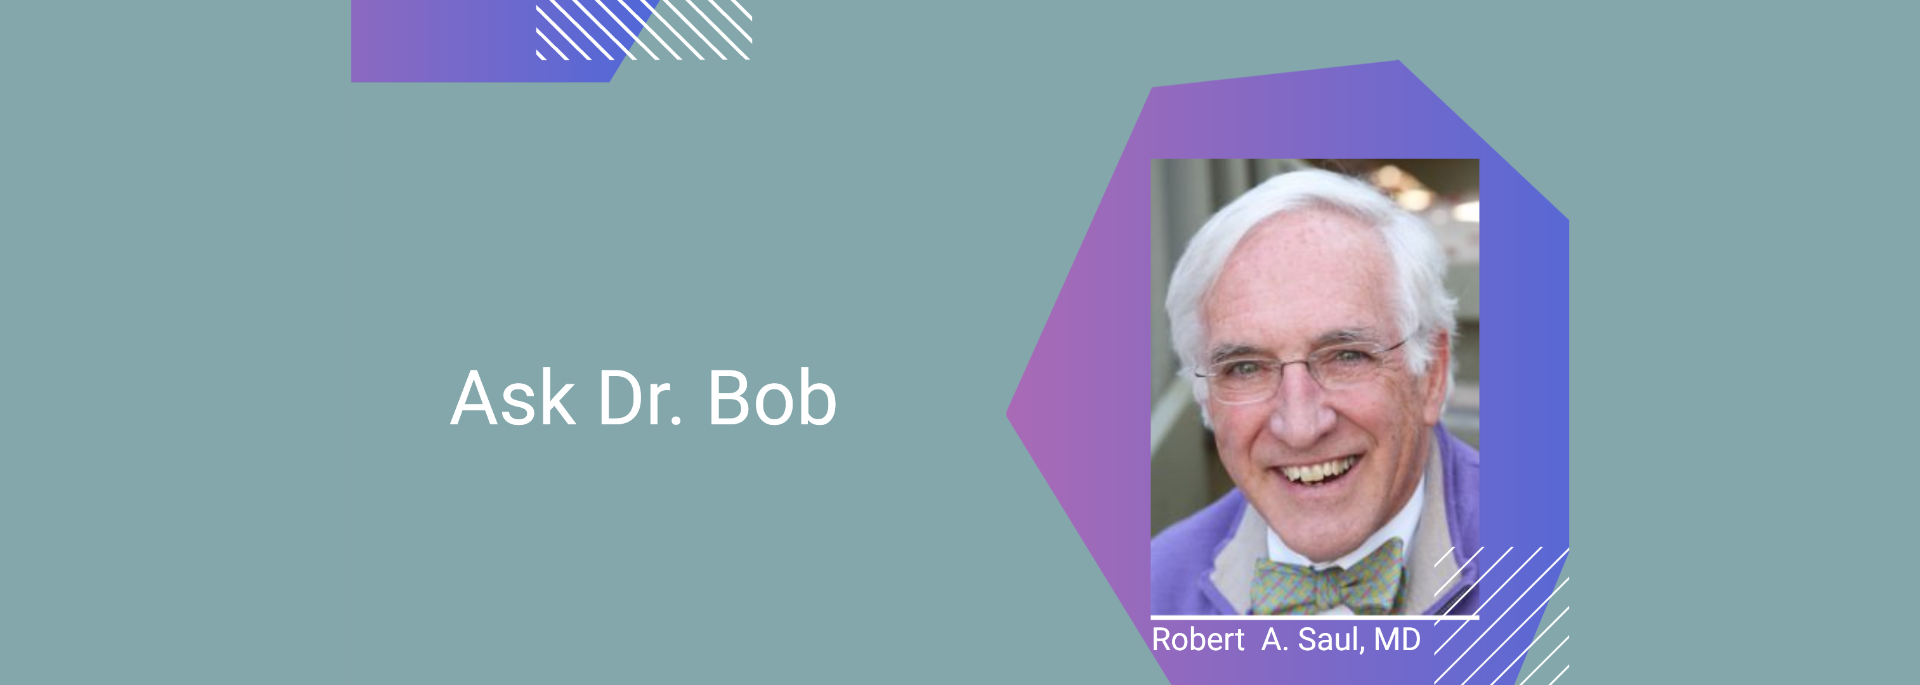 Ask Dr. Bob 